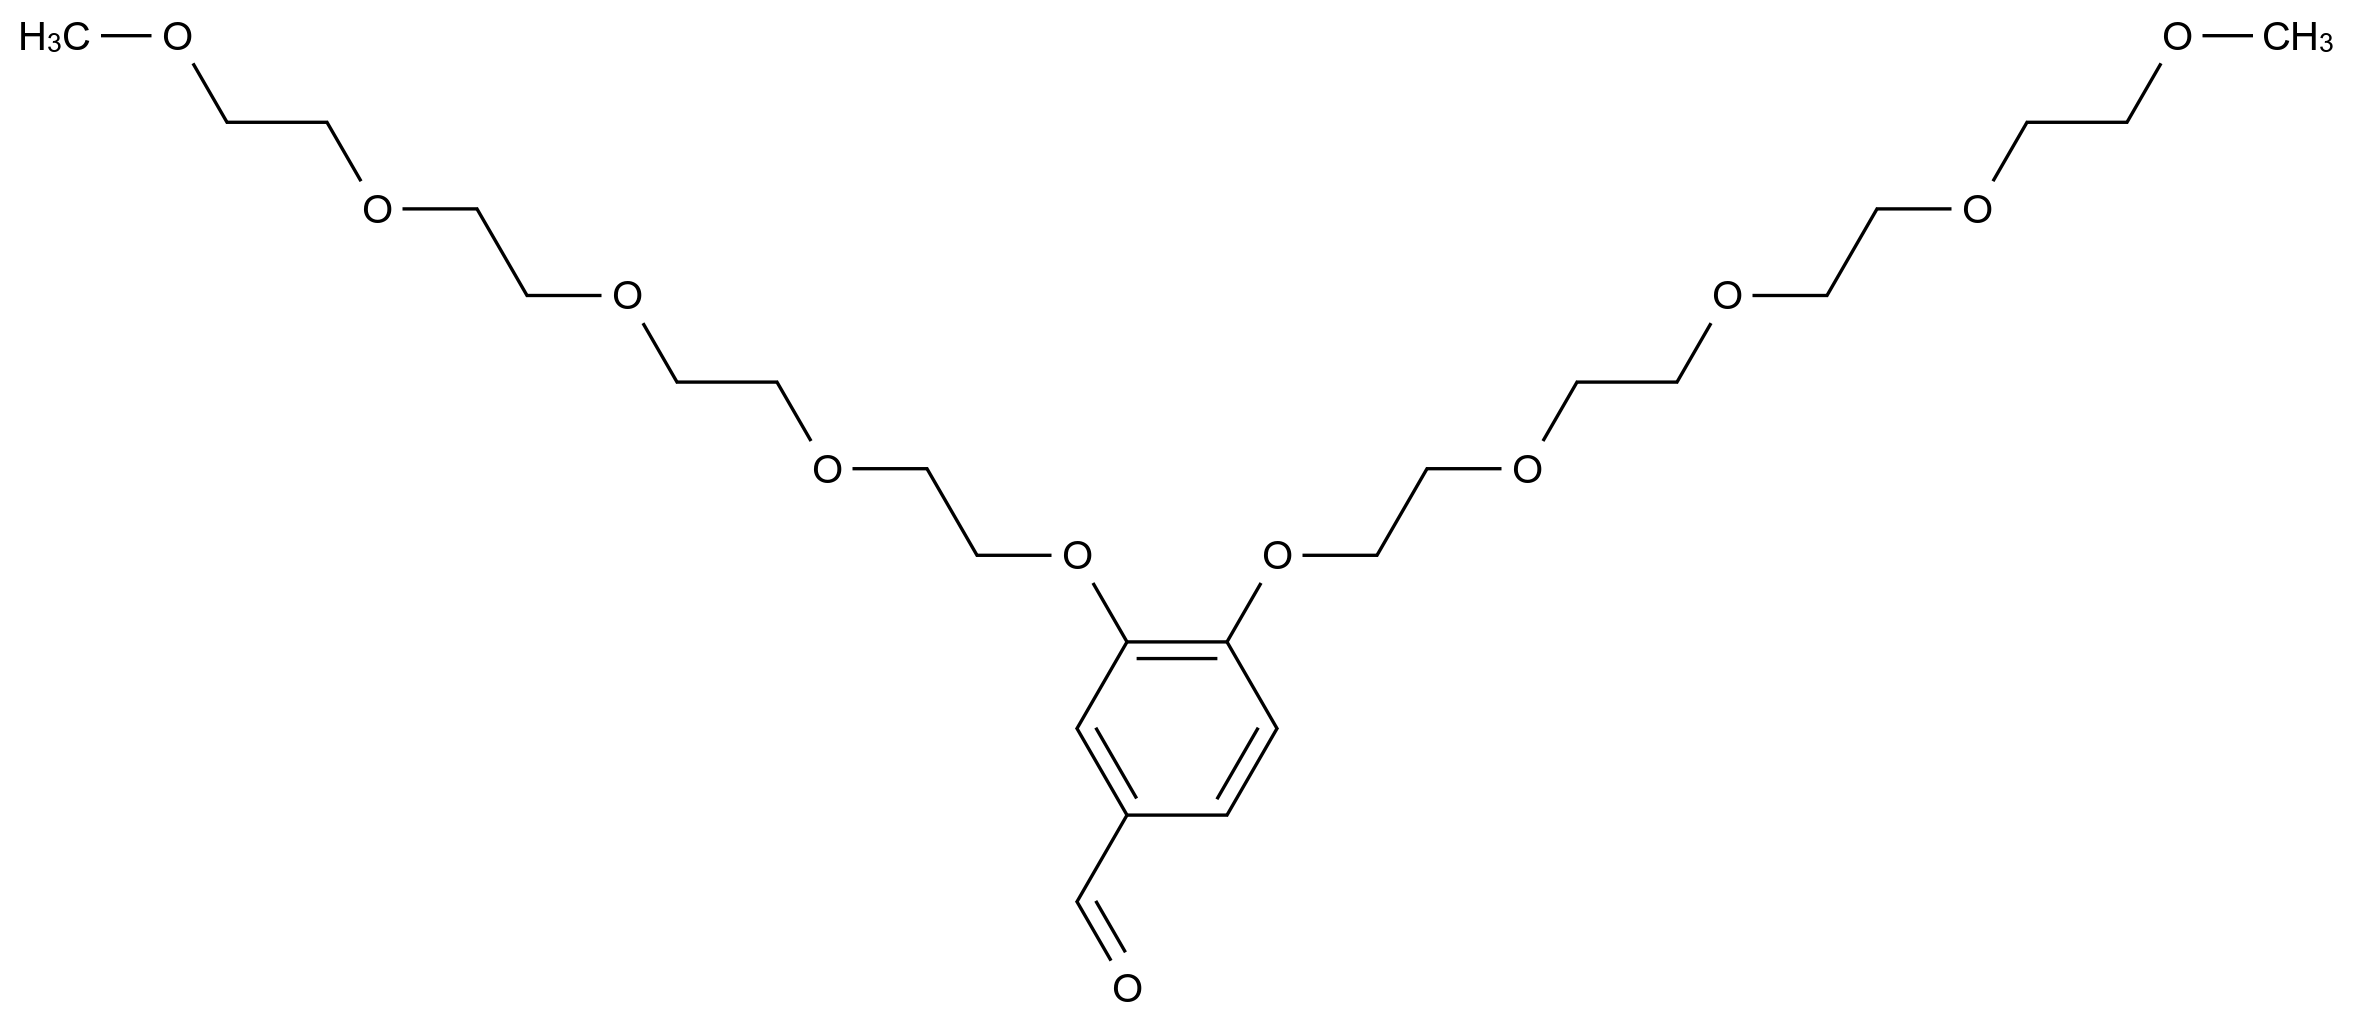 3,4-bis[2-[2-[2-(2-methoxyethoxy)ethoxy]ethoxy]ethoxy]benzaldehyde_109168-95-8